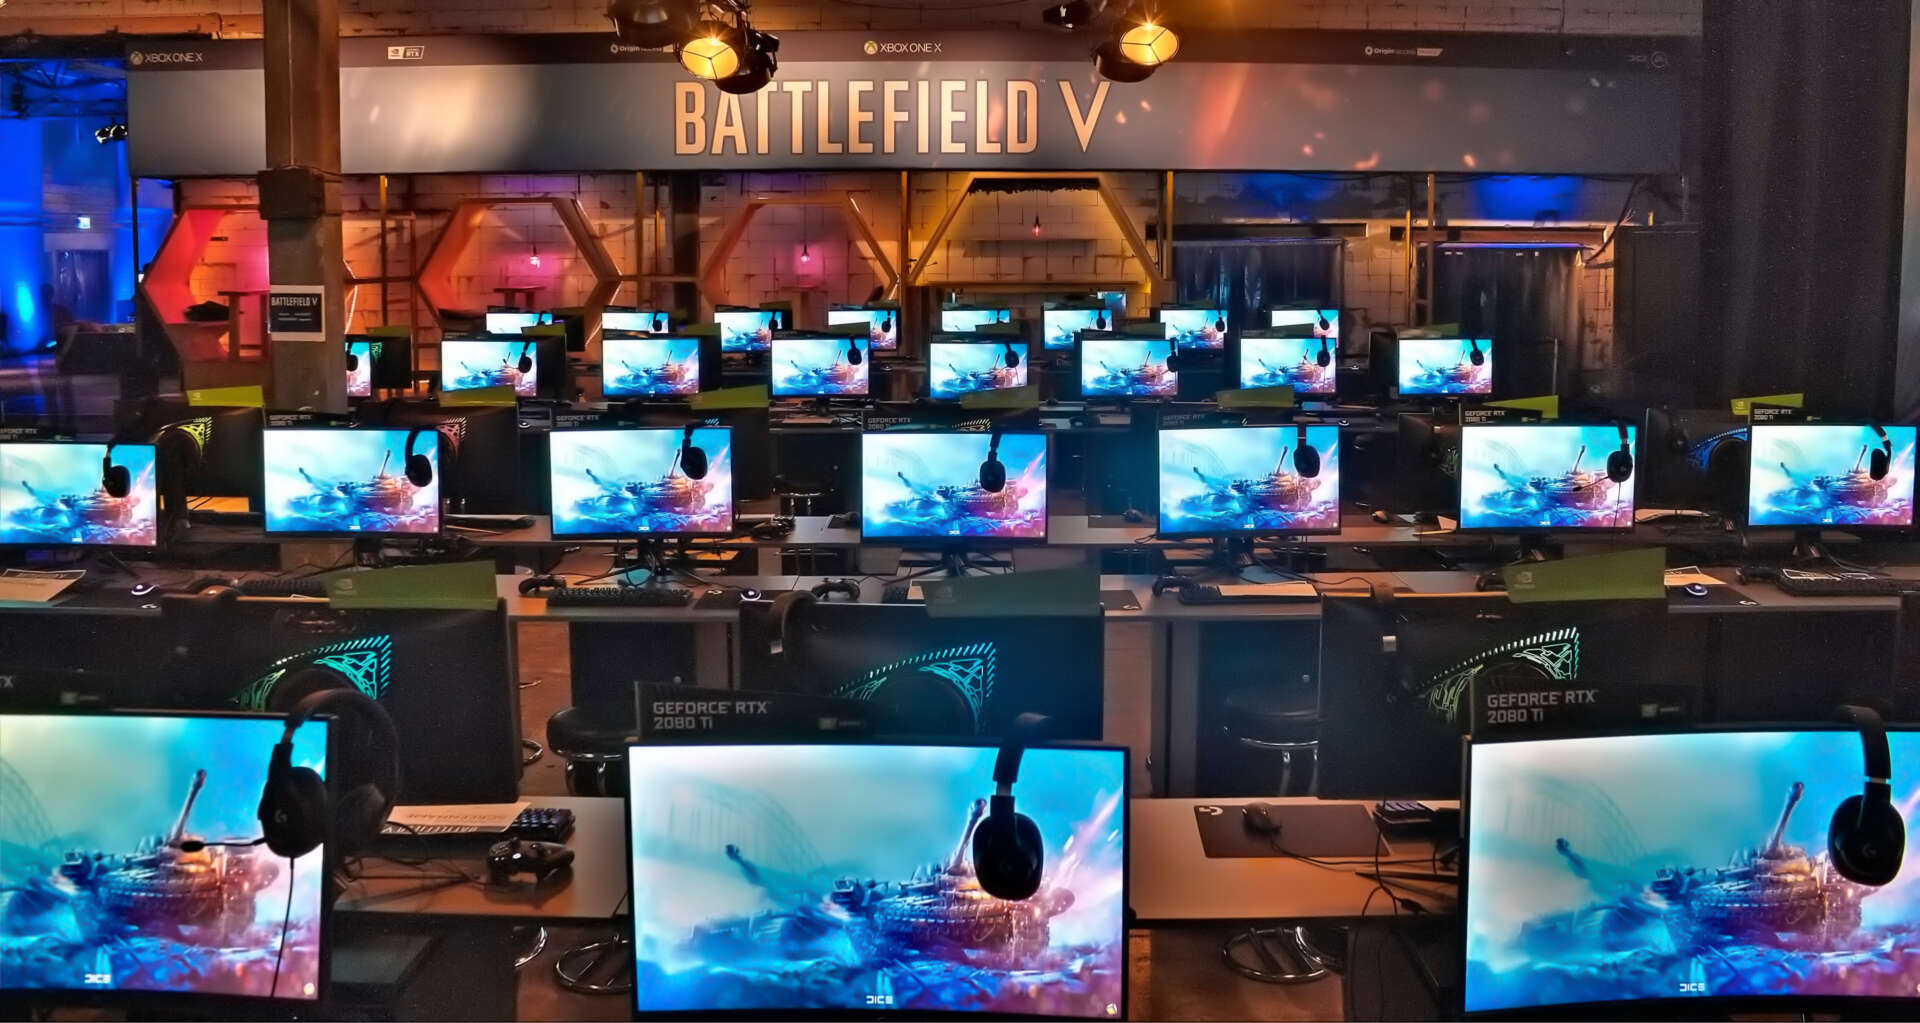 Mehrere Reihen Gaming-PCs und ein Battlefield V Branding am Ende der Halle